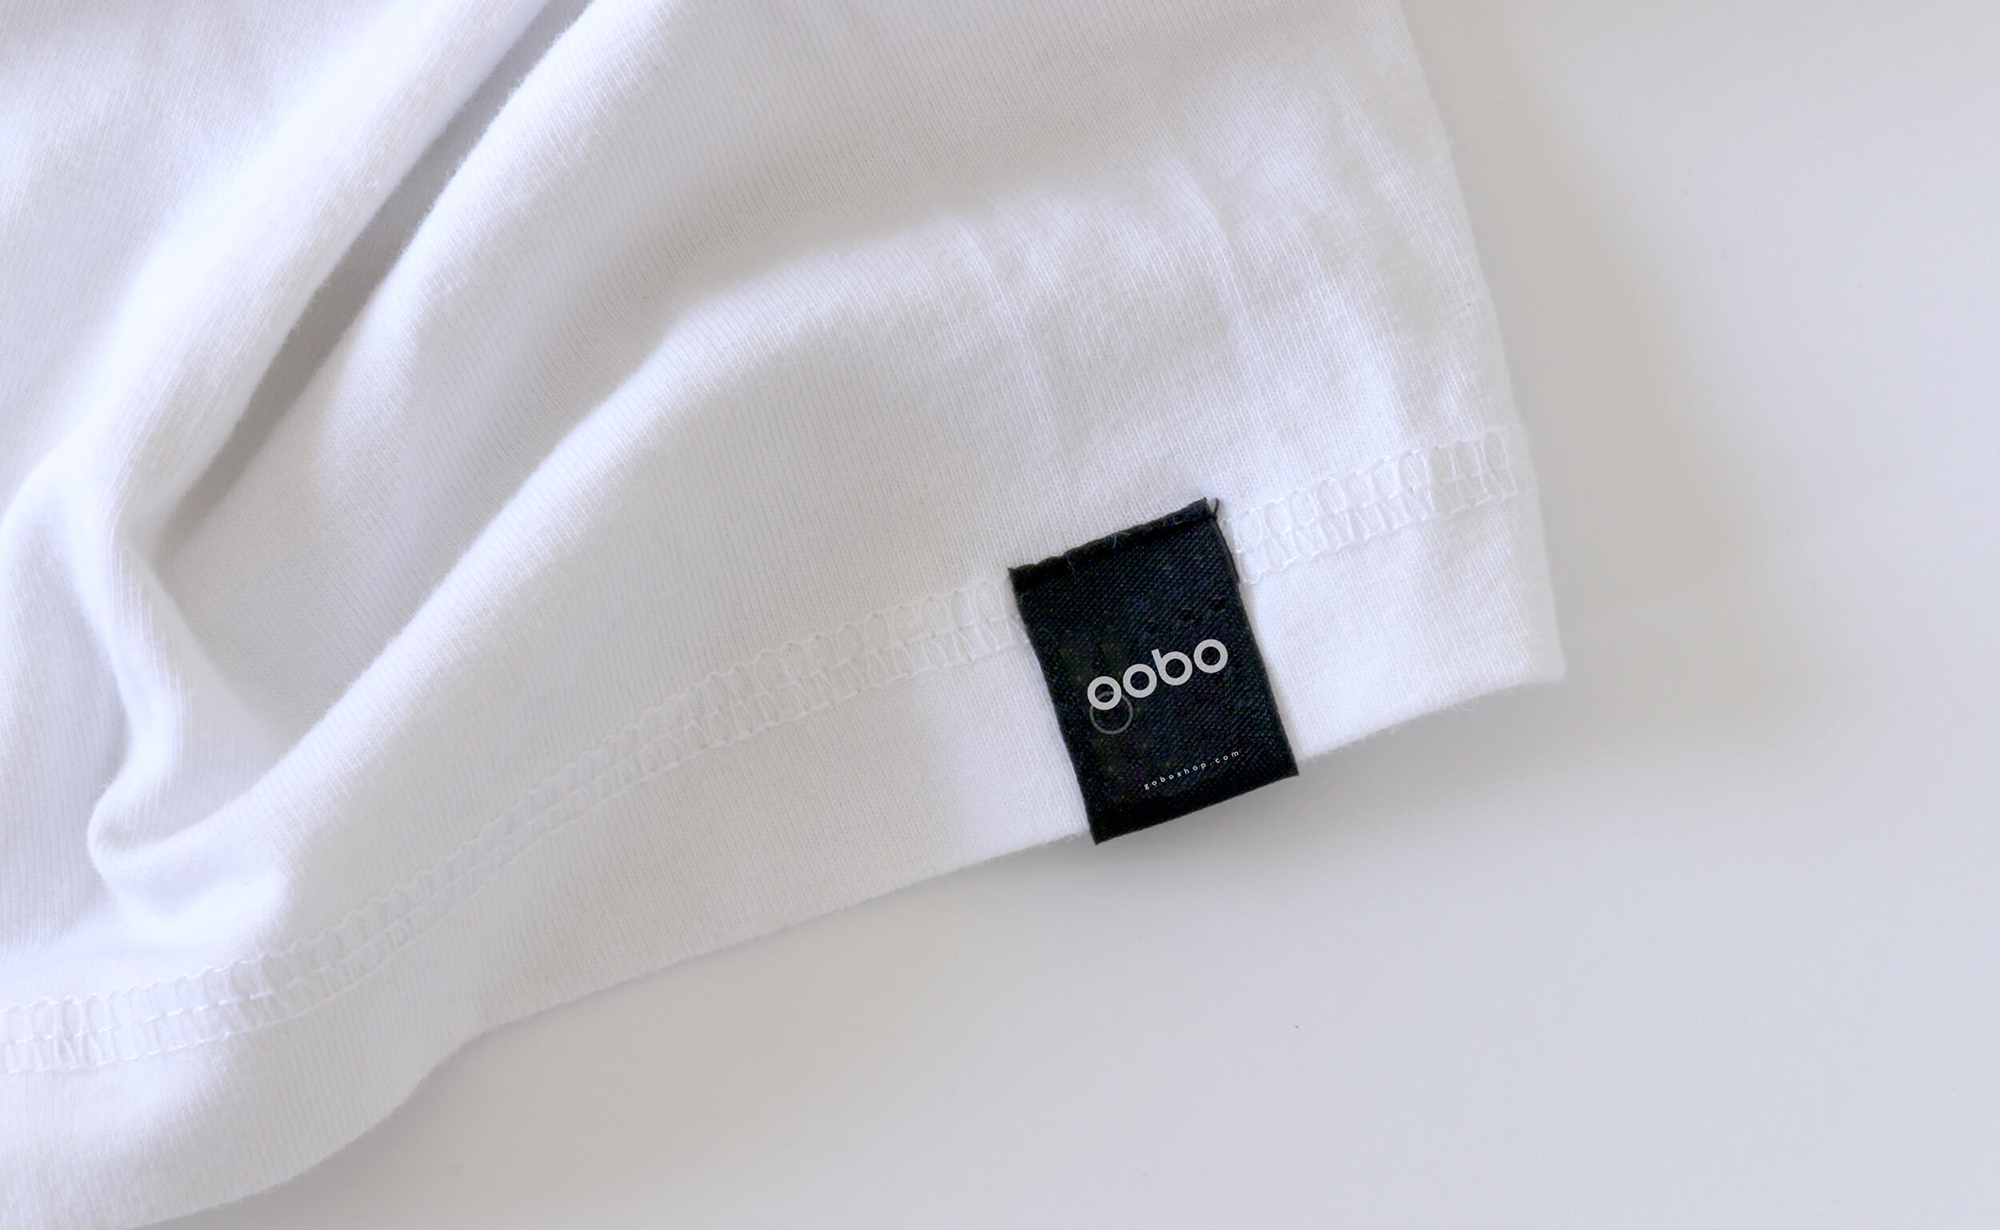 Diseño y desarrollo de identidad visual corporativa para Gobo. T-shirt label.